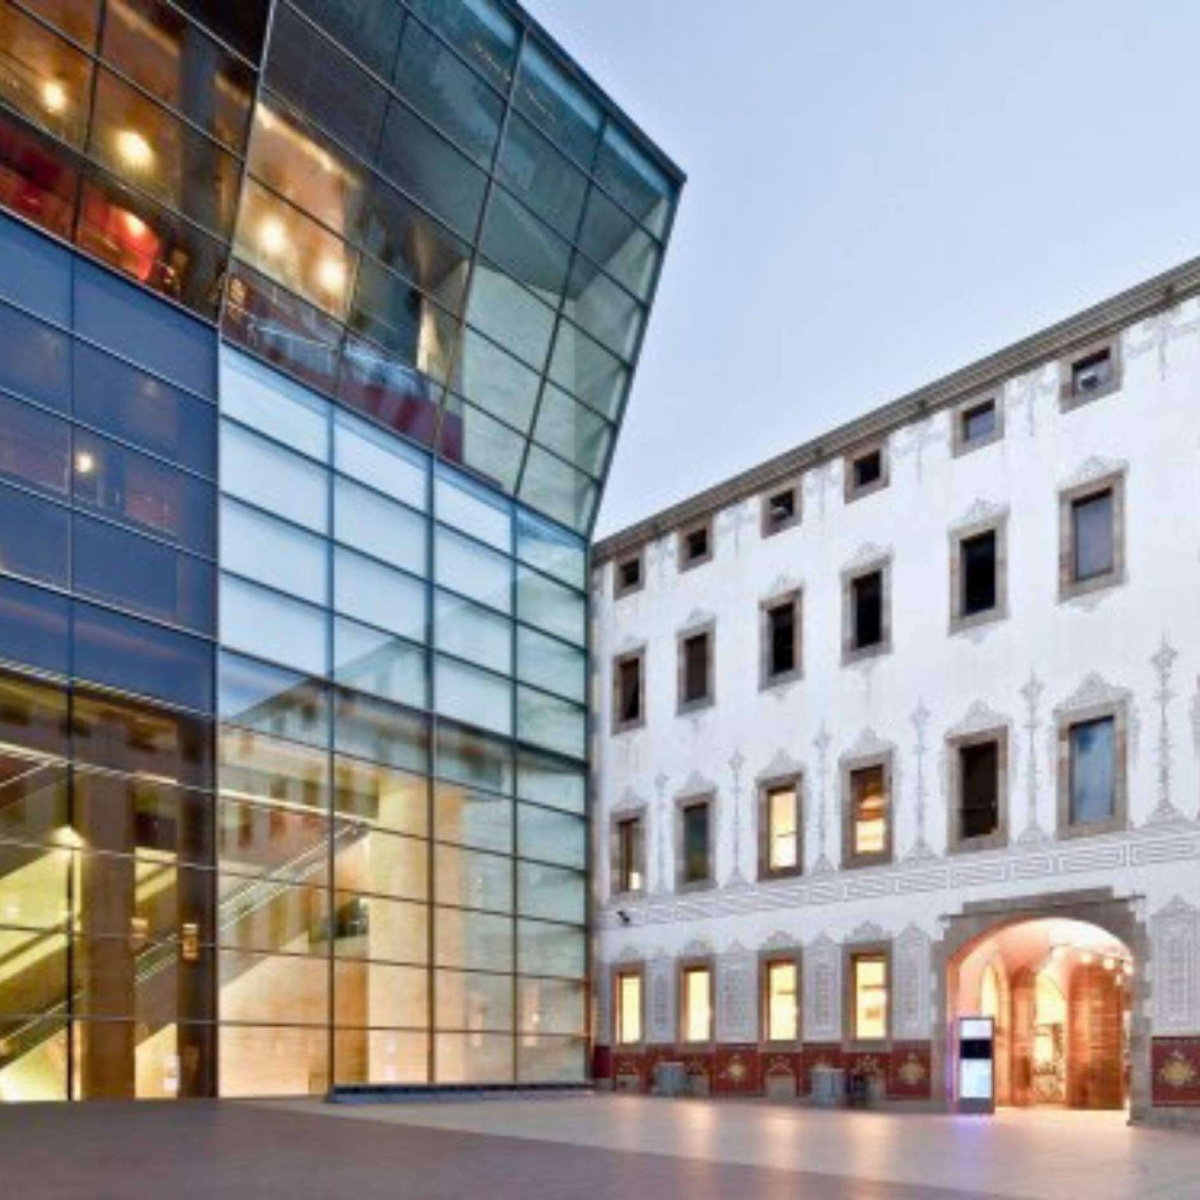 Centre de Cultura Contemporània de Barcelona - CCCB